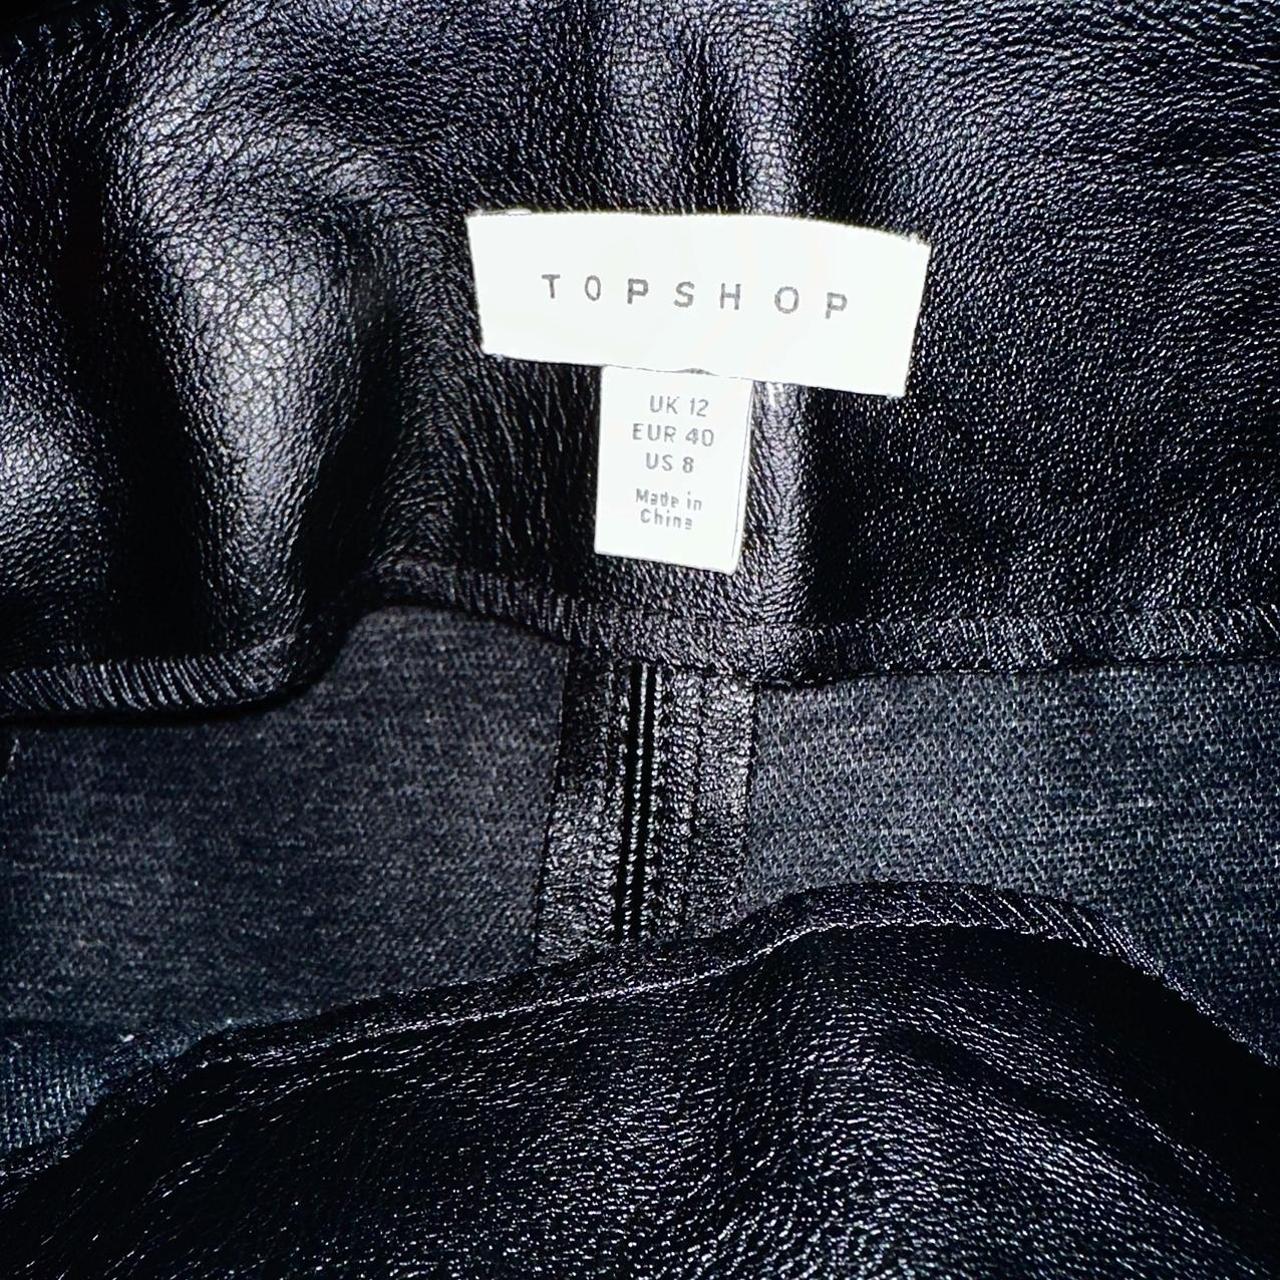 Topshop buckle pleat faux leather mini skirt, size US 8 - Depop